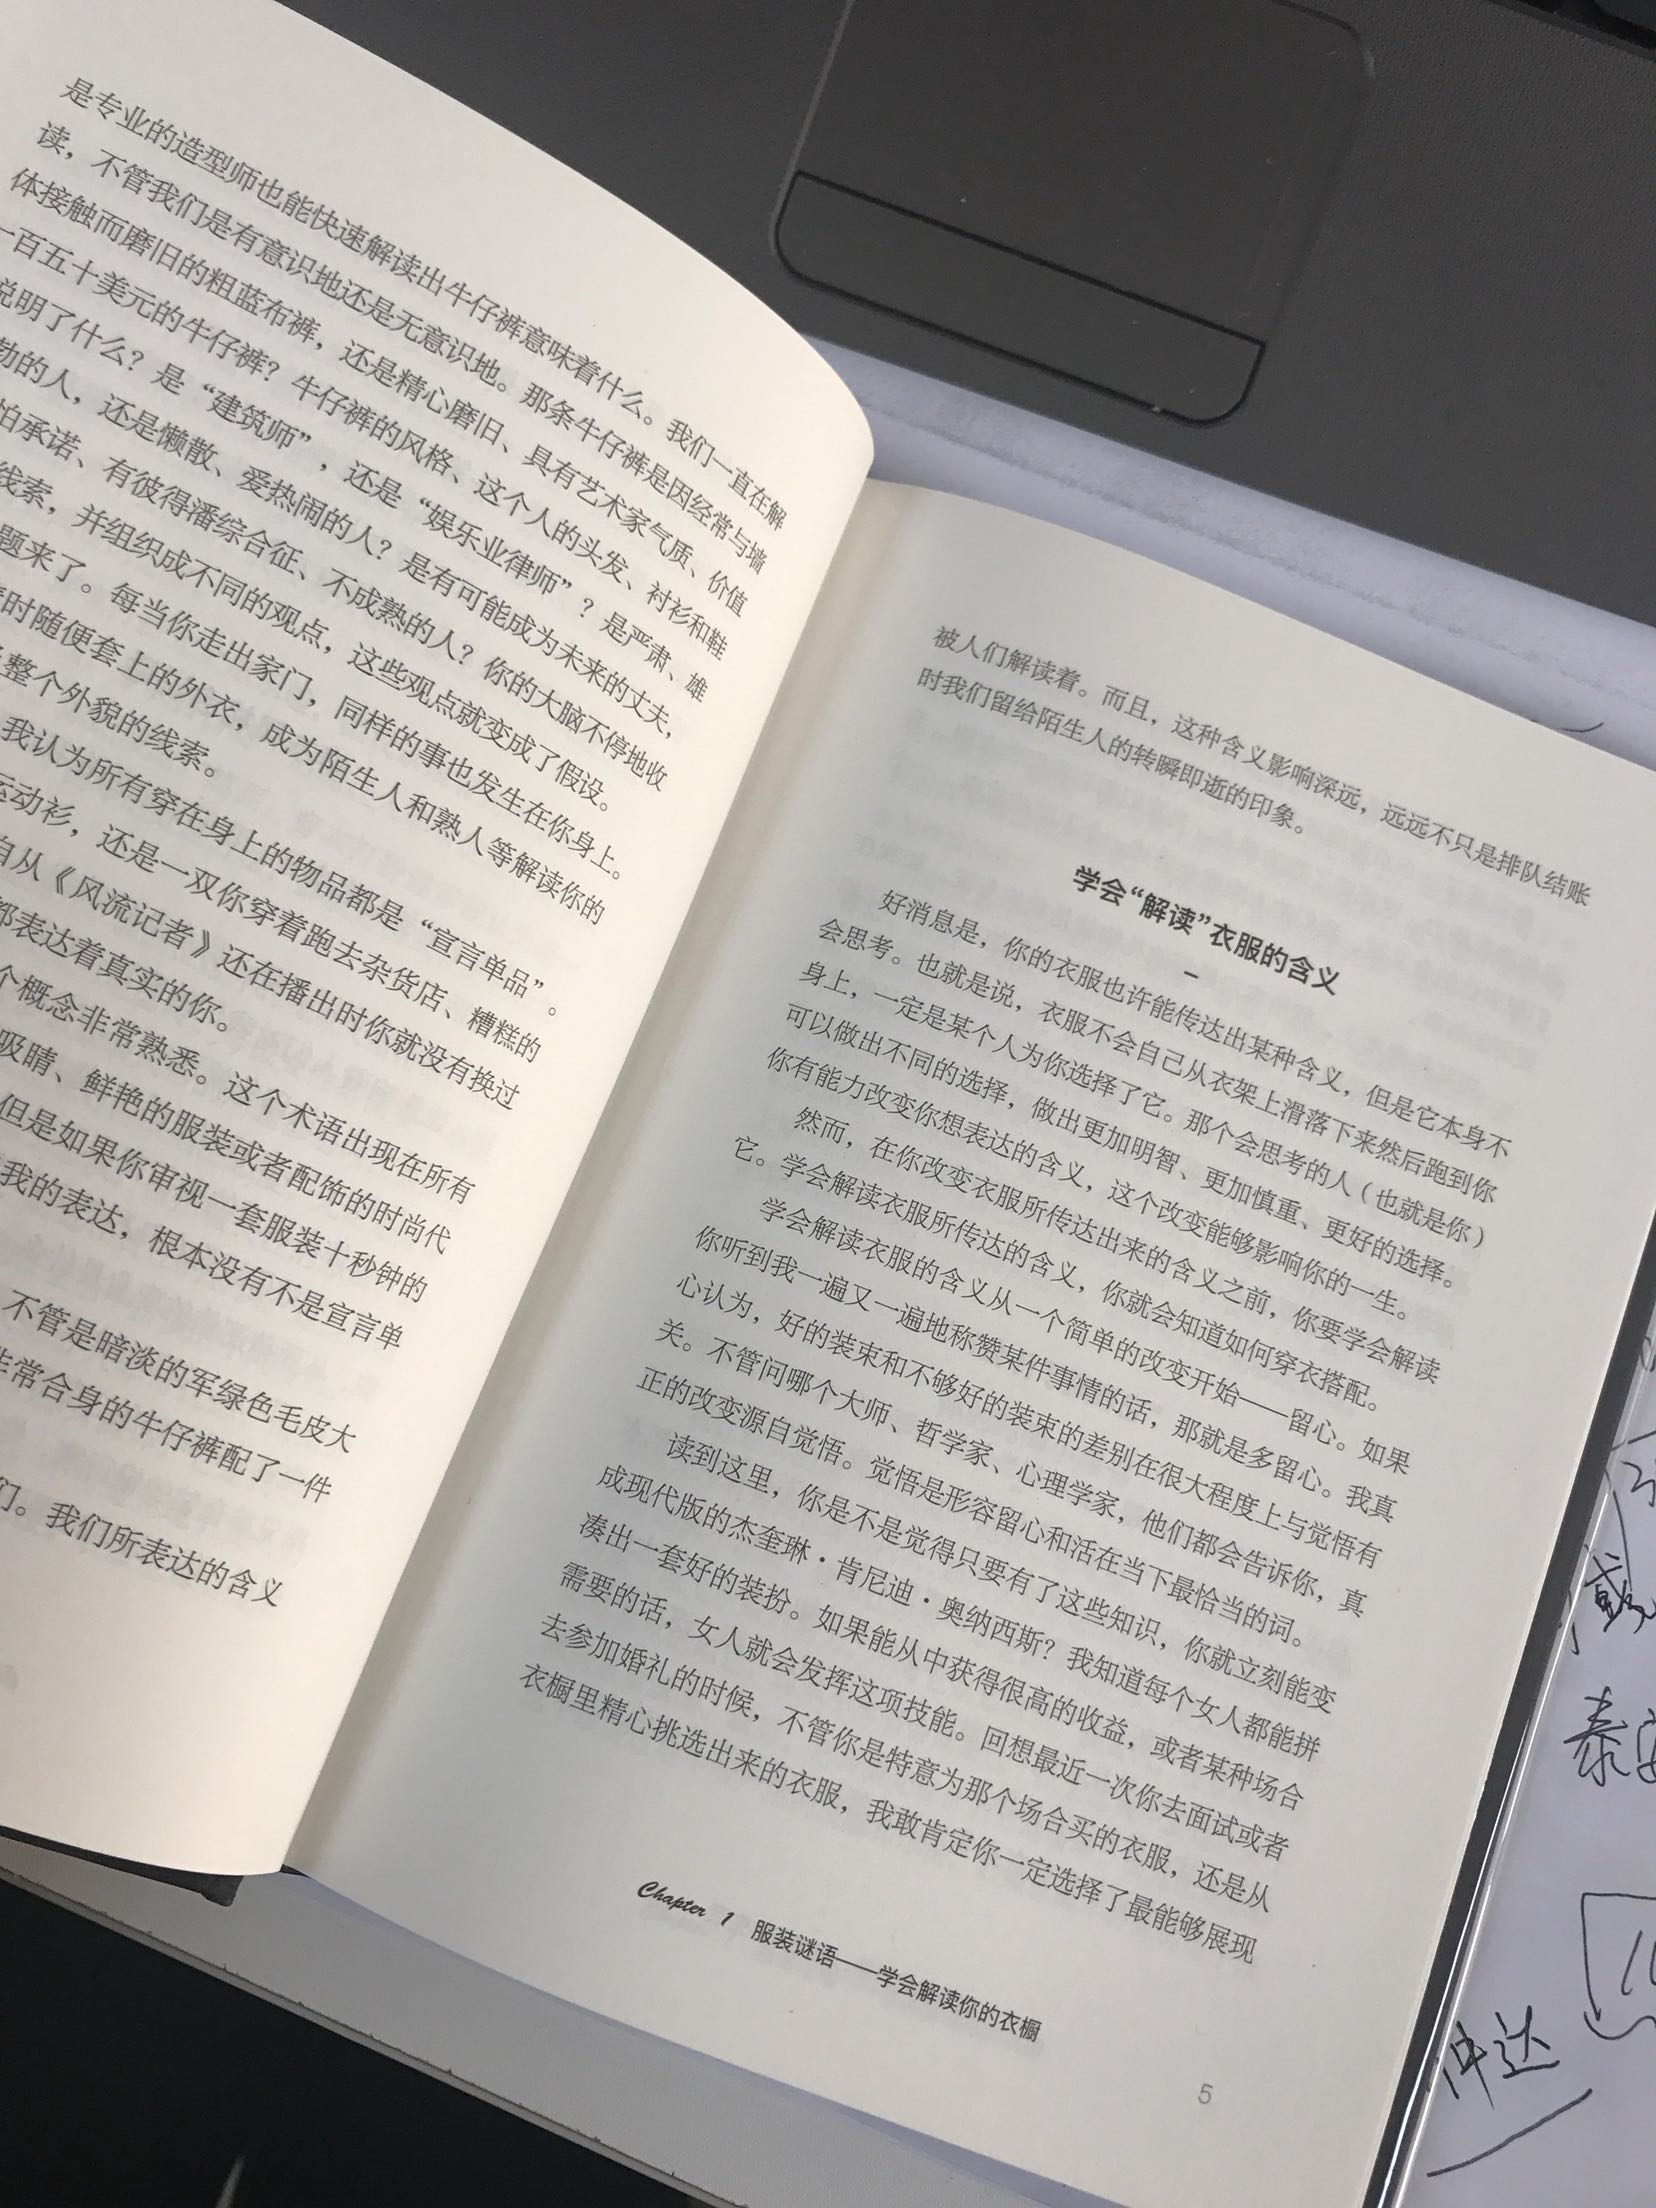 在北京用用自营超级快 书的质量很好 看完追评期待是本好书